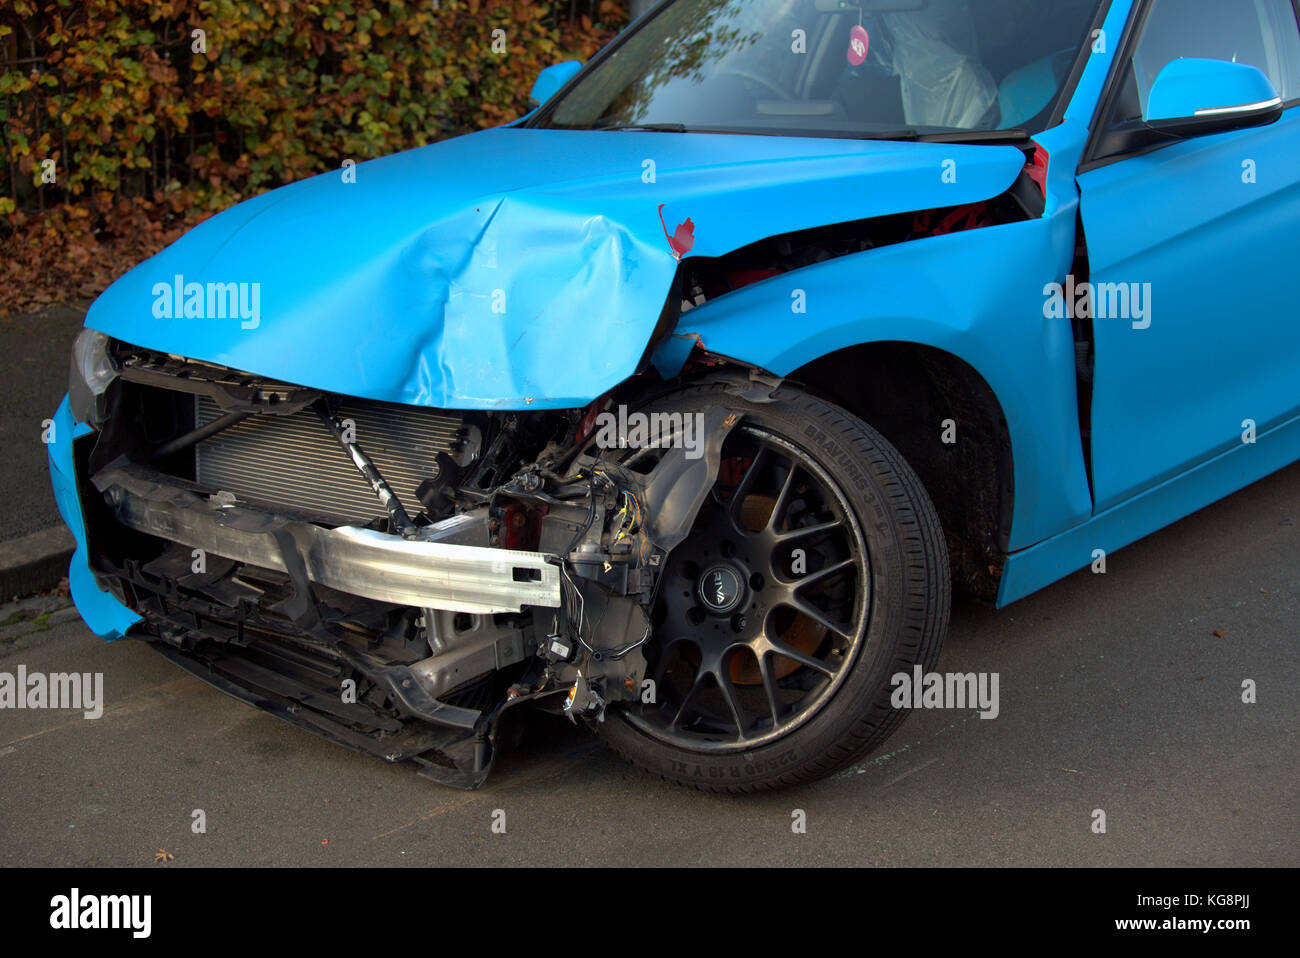 Accidente de automóvil coche rueda delantera dañada en ángulo recto Foto de stock